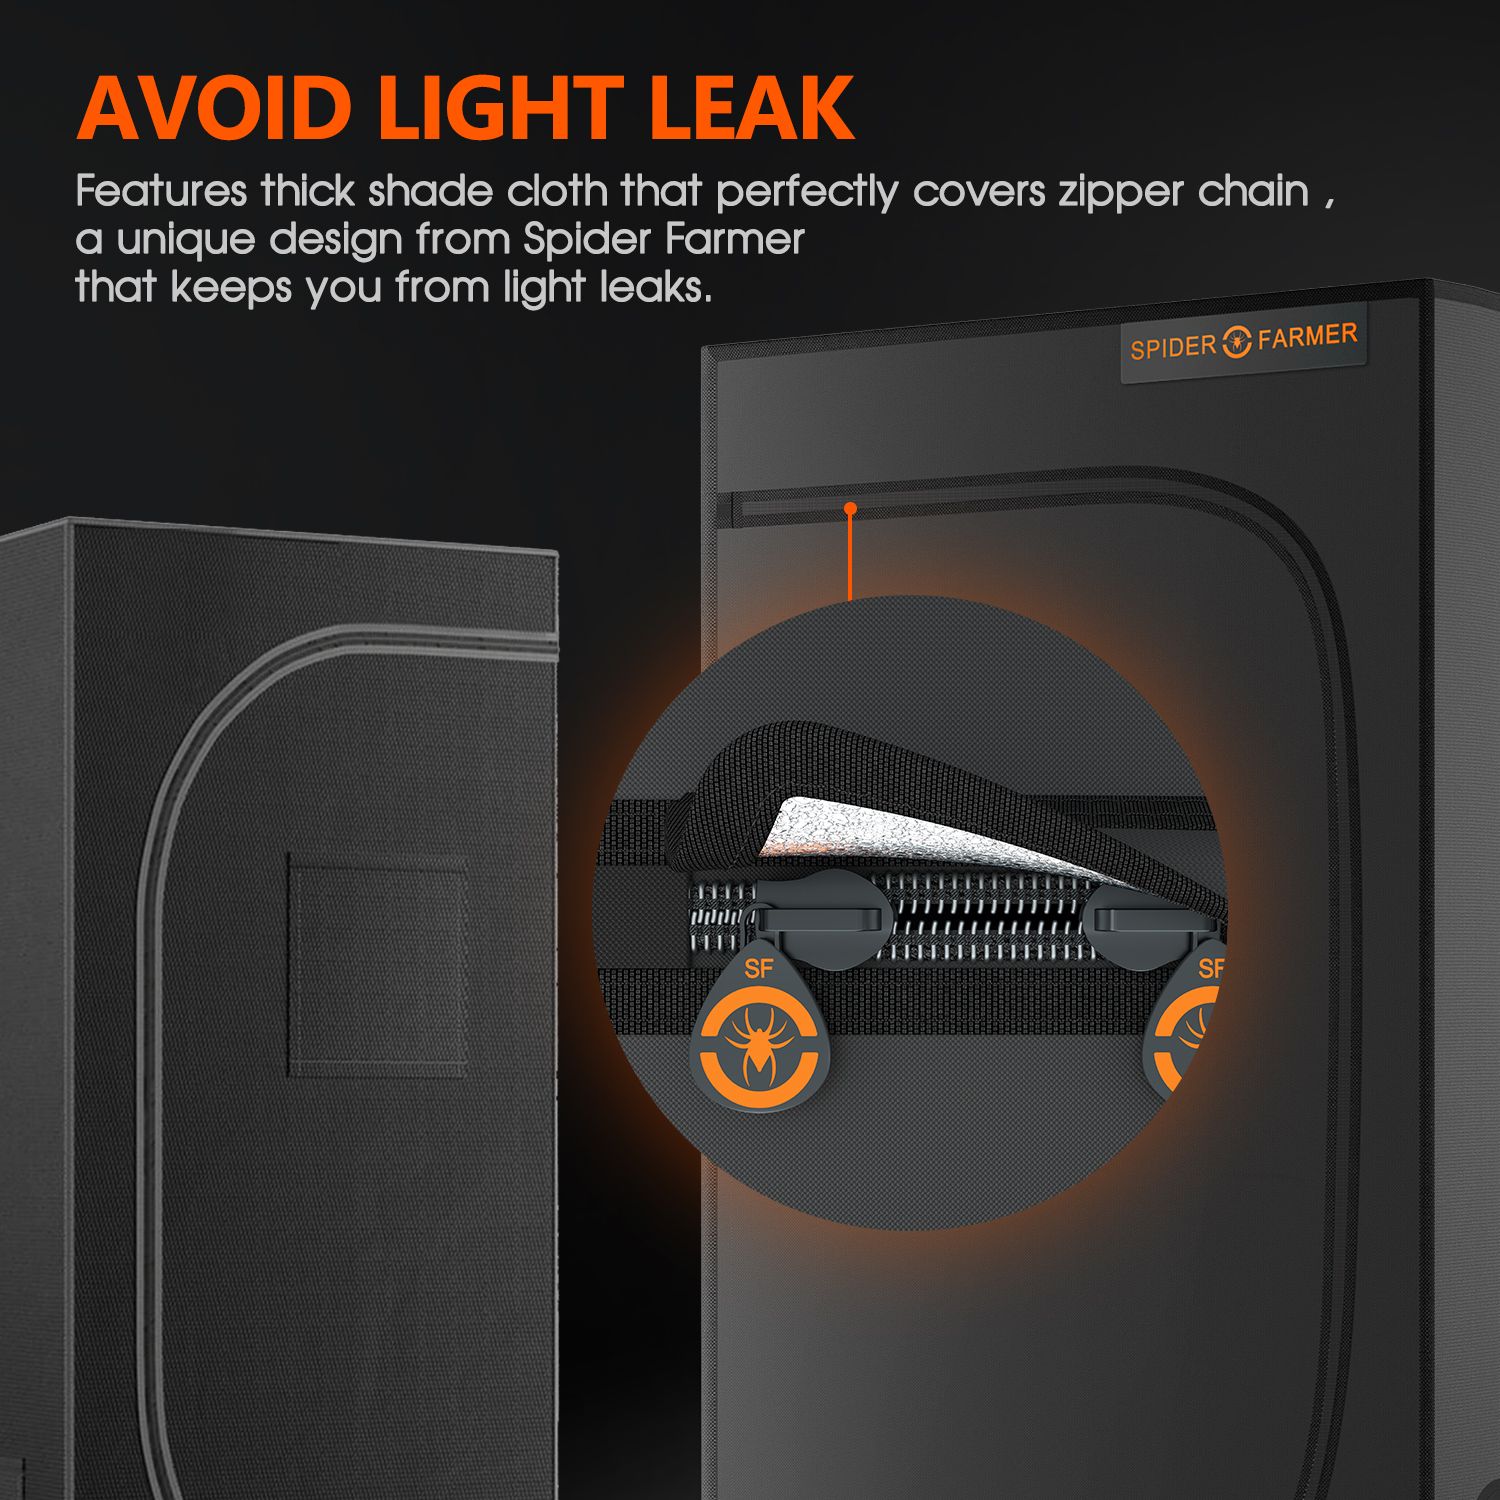 Aviod light leak